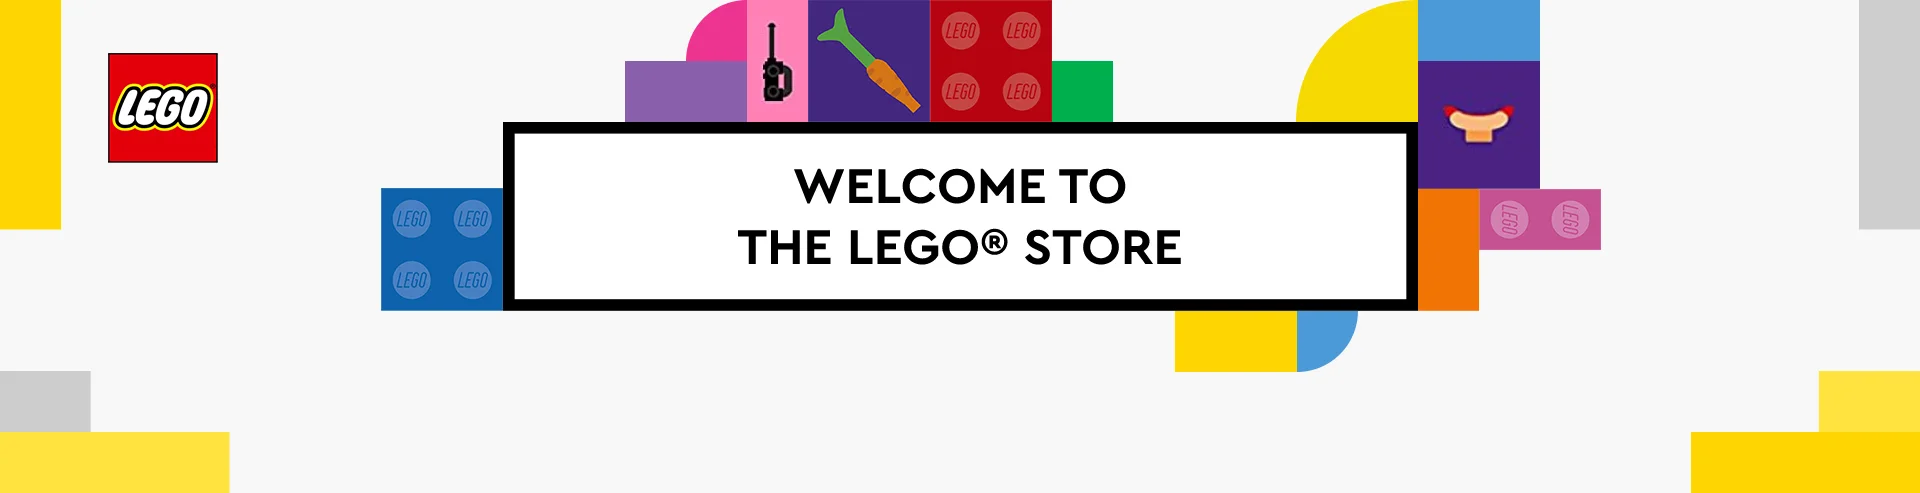 VM-Hero-LEGO-Welcome-Banner-1920x493.webp